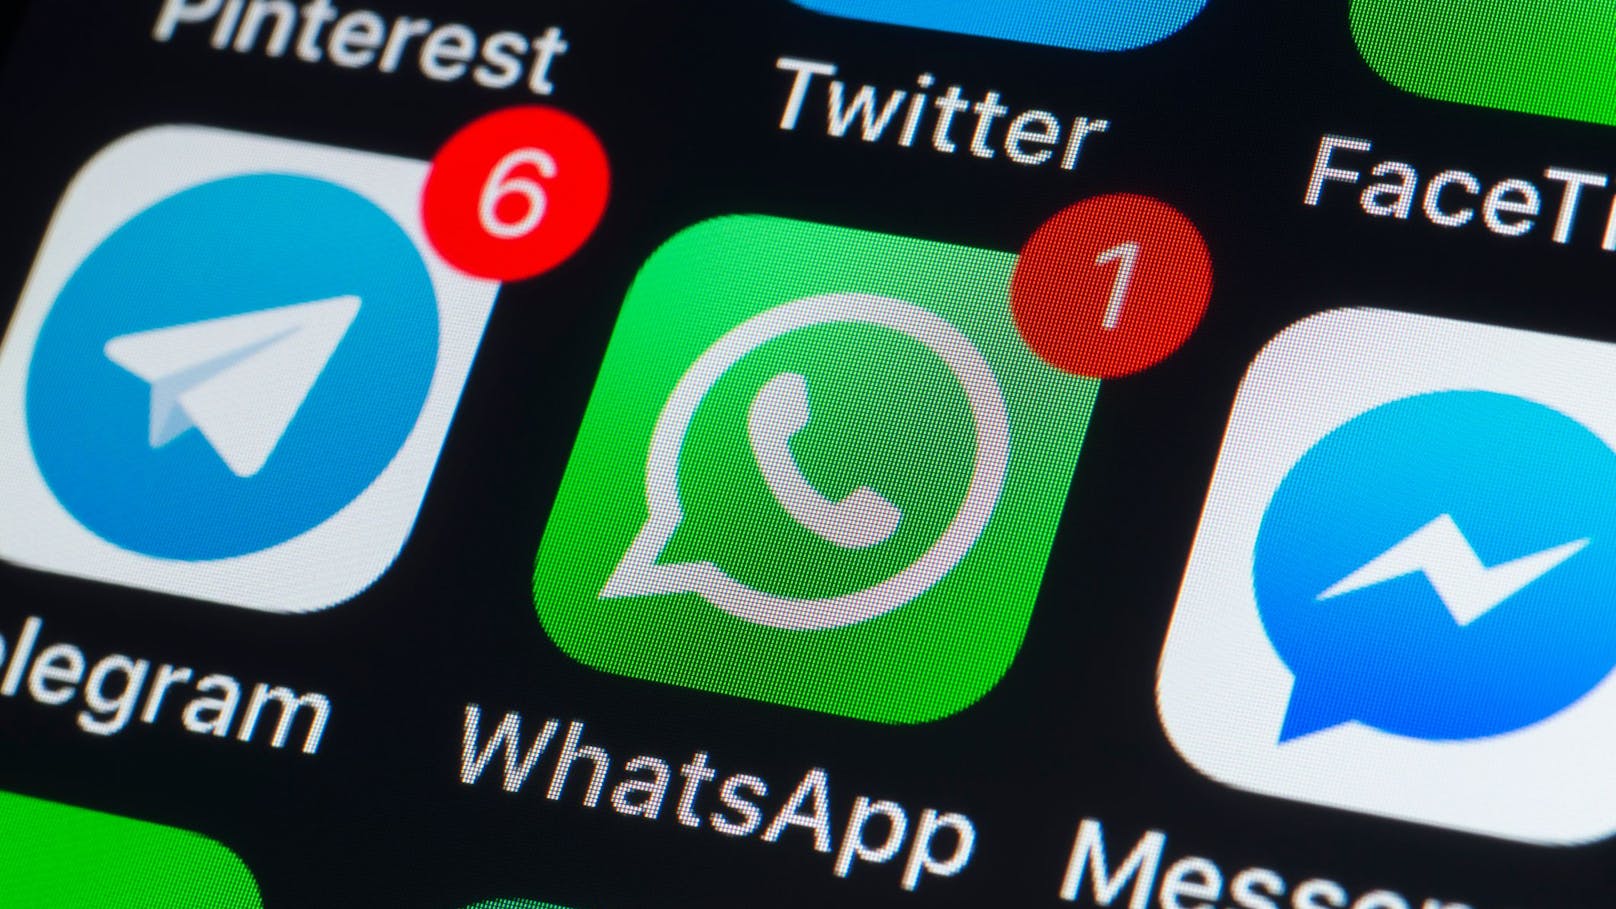 WhatsApp schaltet bei einigen älteren Smartphones in Kürze den Support ab.